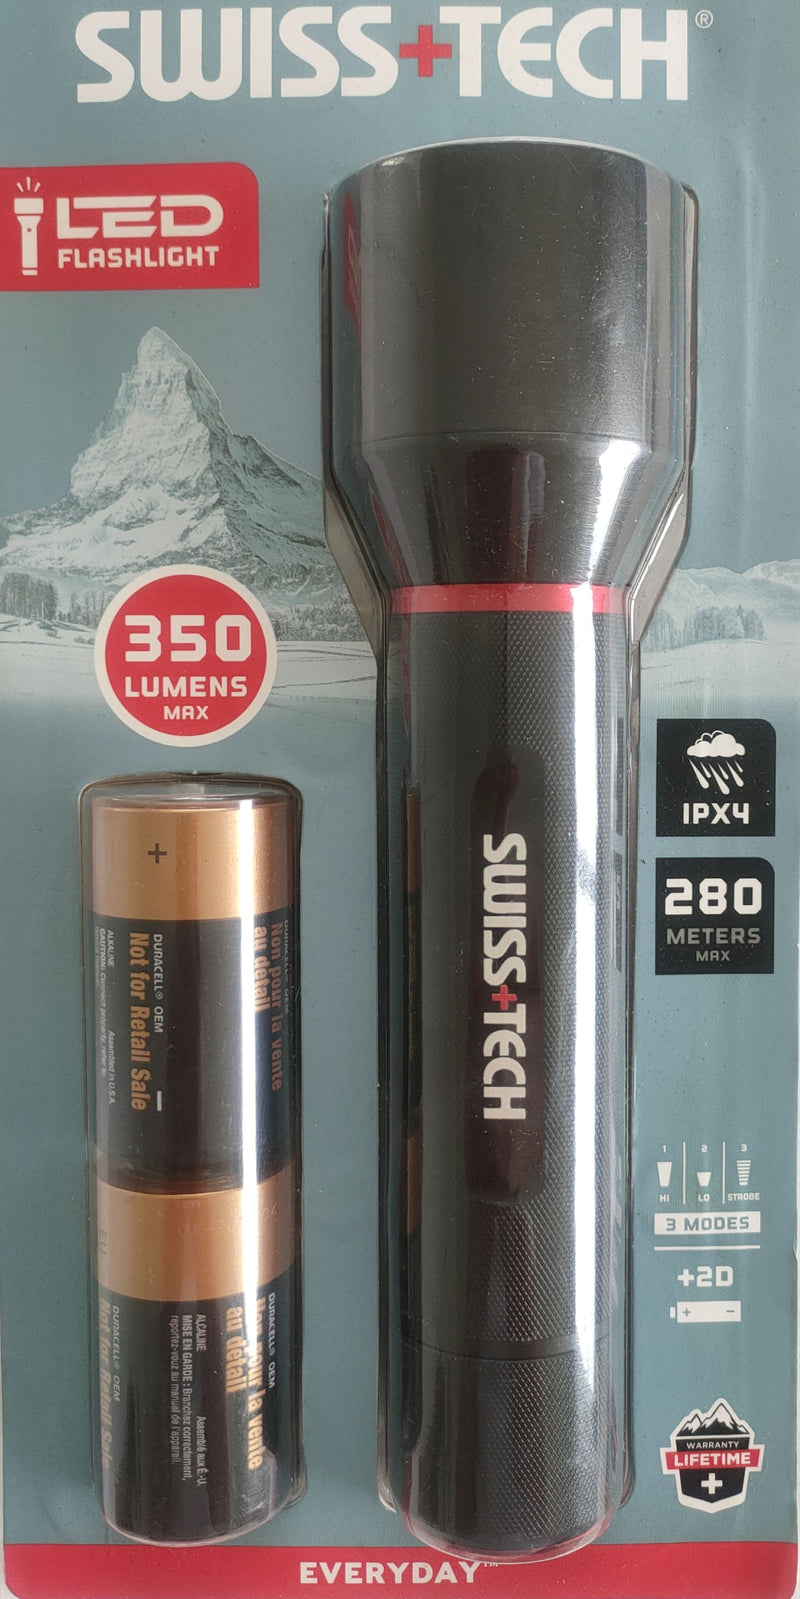 Swiss+Tech LED Flashlight - Battery operated